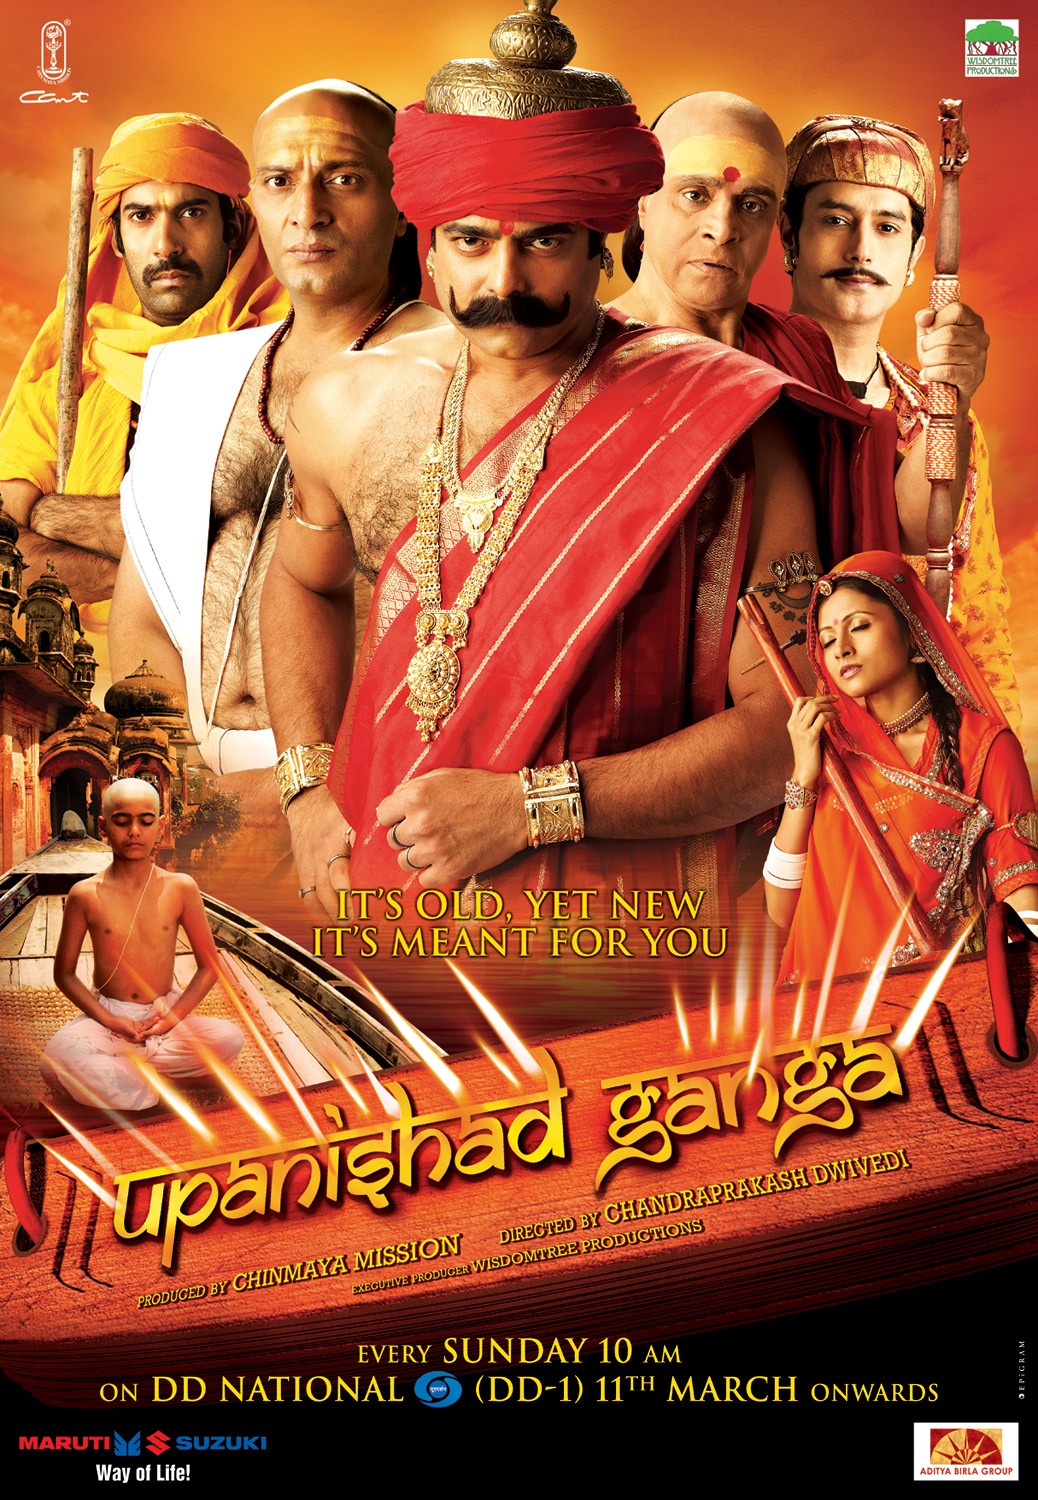 Extra Large TV Poster Image for Upanishad Ganga (#1 of 4)